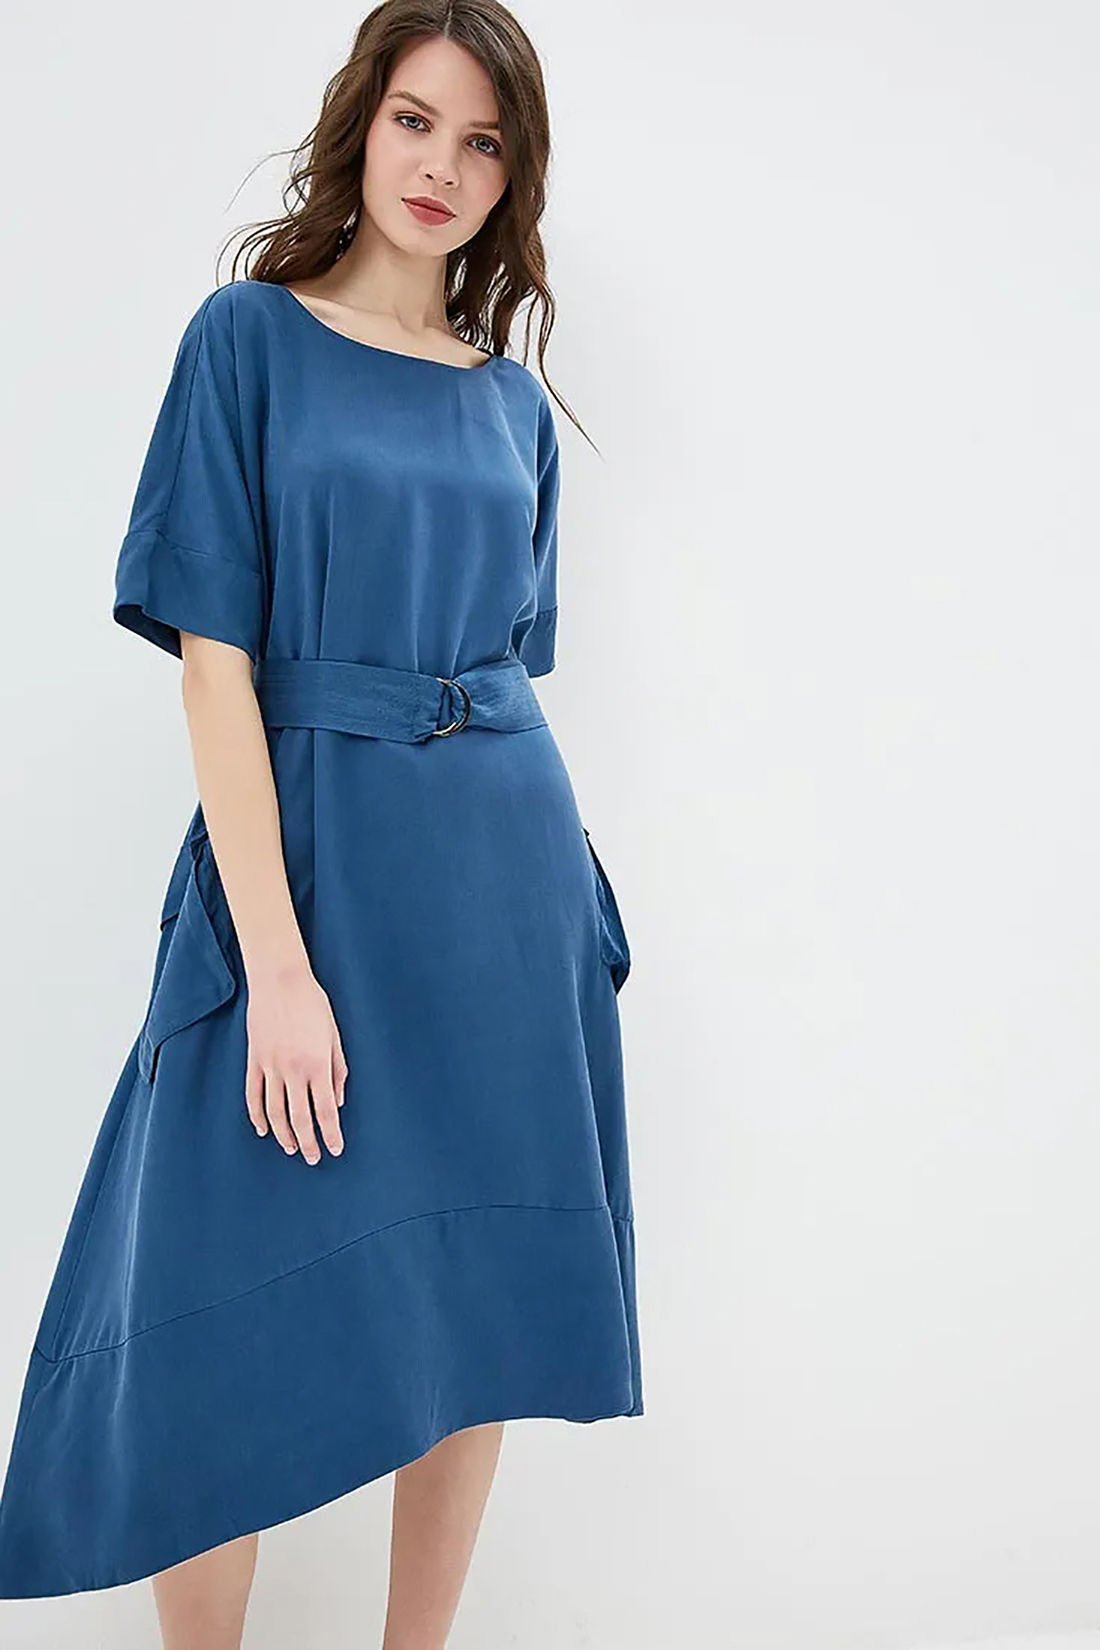 Платье с модным поясом (арт. baon B459060), размер XL, цвет синий Платье с модным поясом (арт. baon B459060) - фото 3